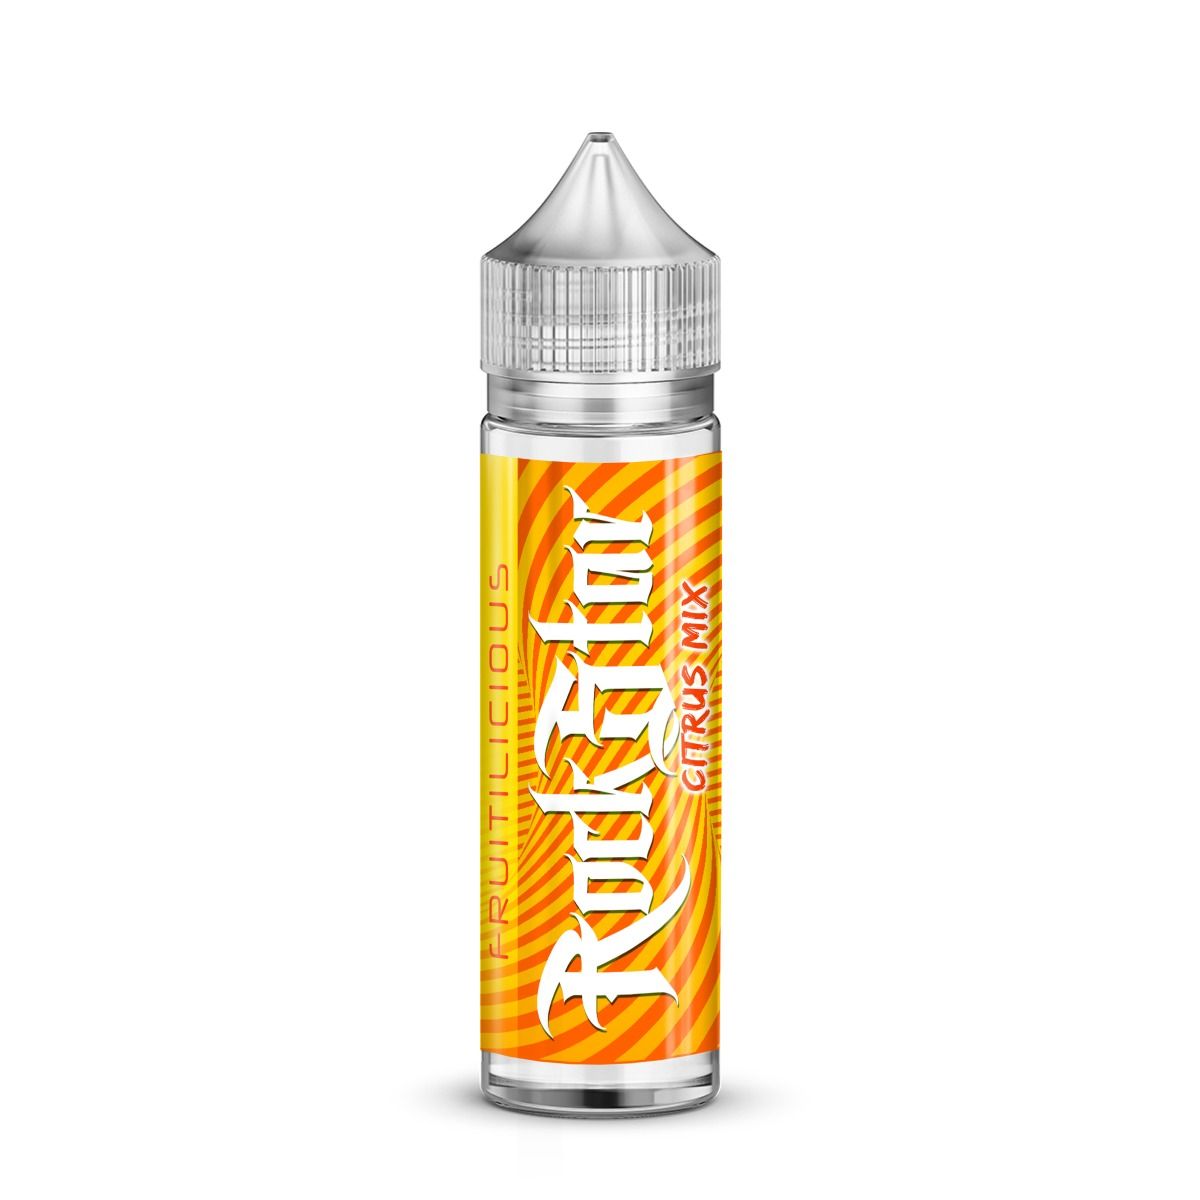 Citrus Mix E-liquid by Rockstar 50ml Shortfill